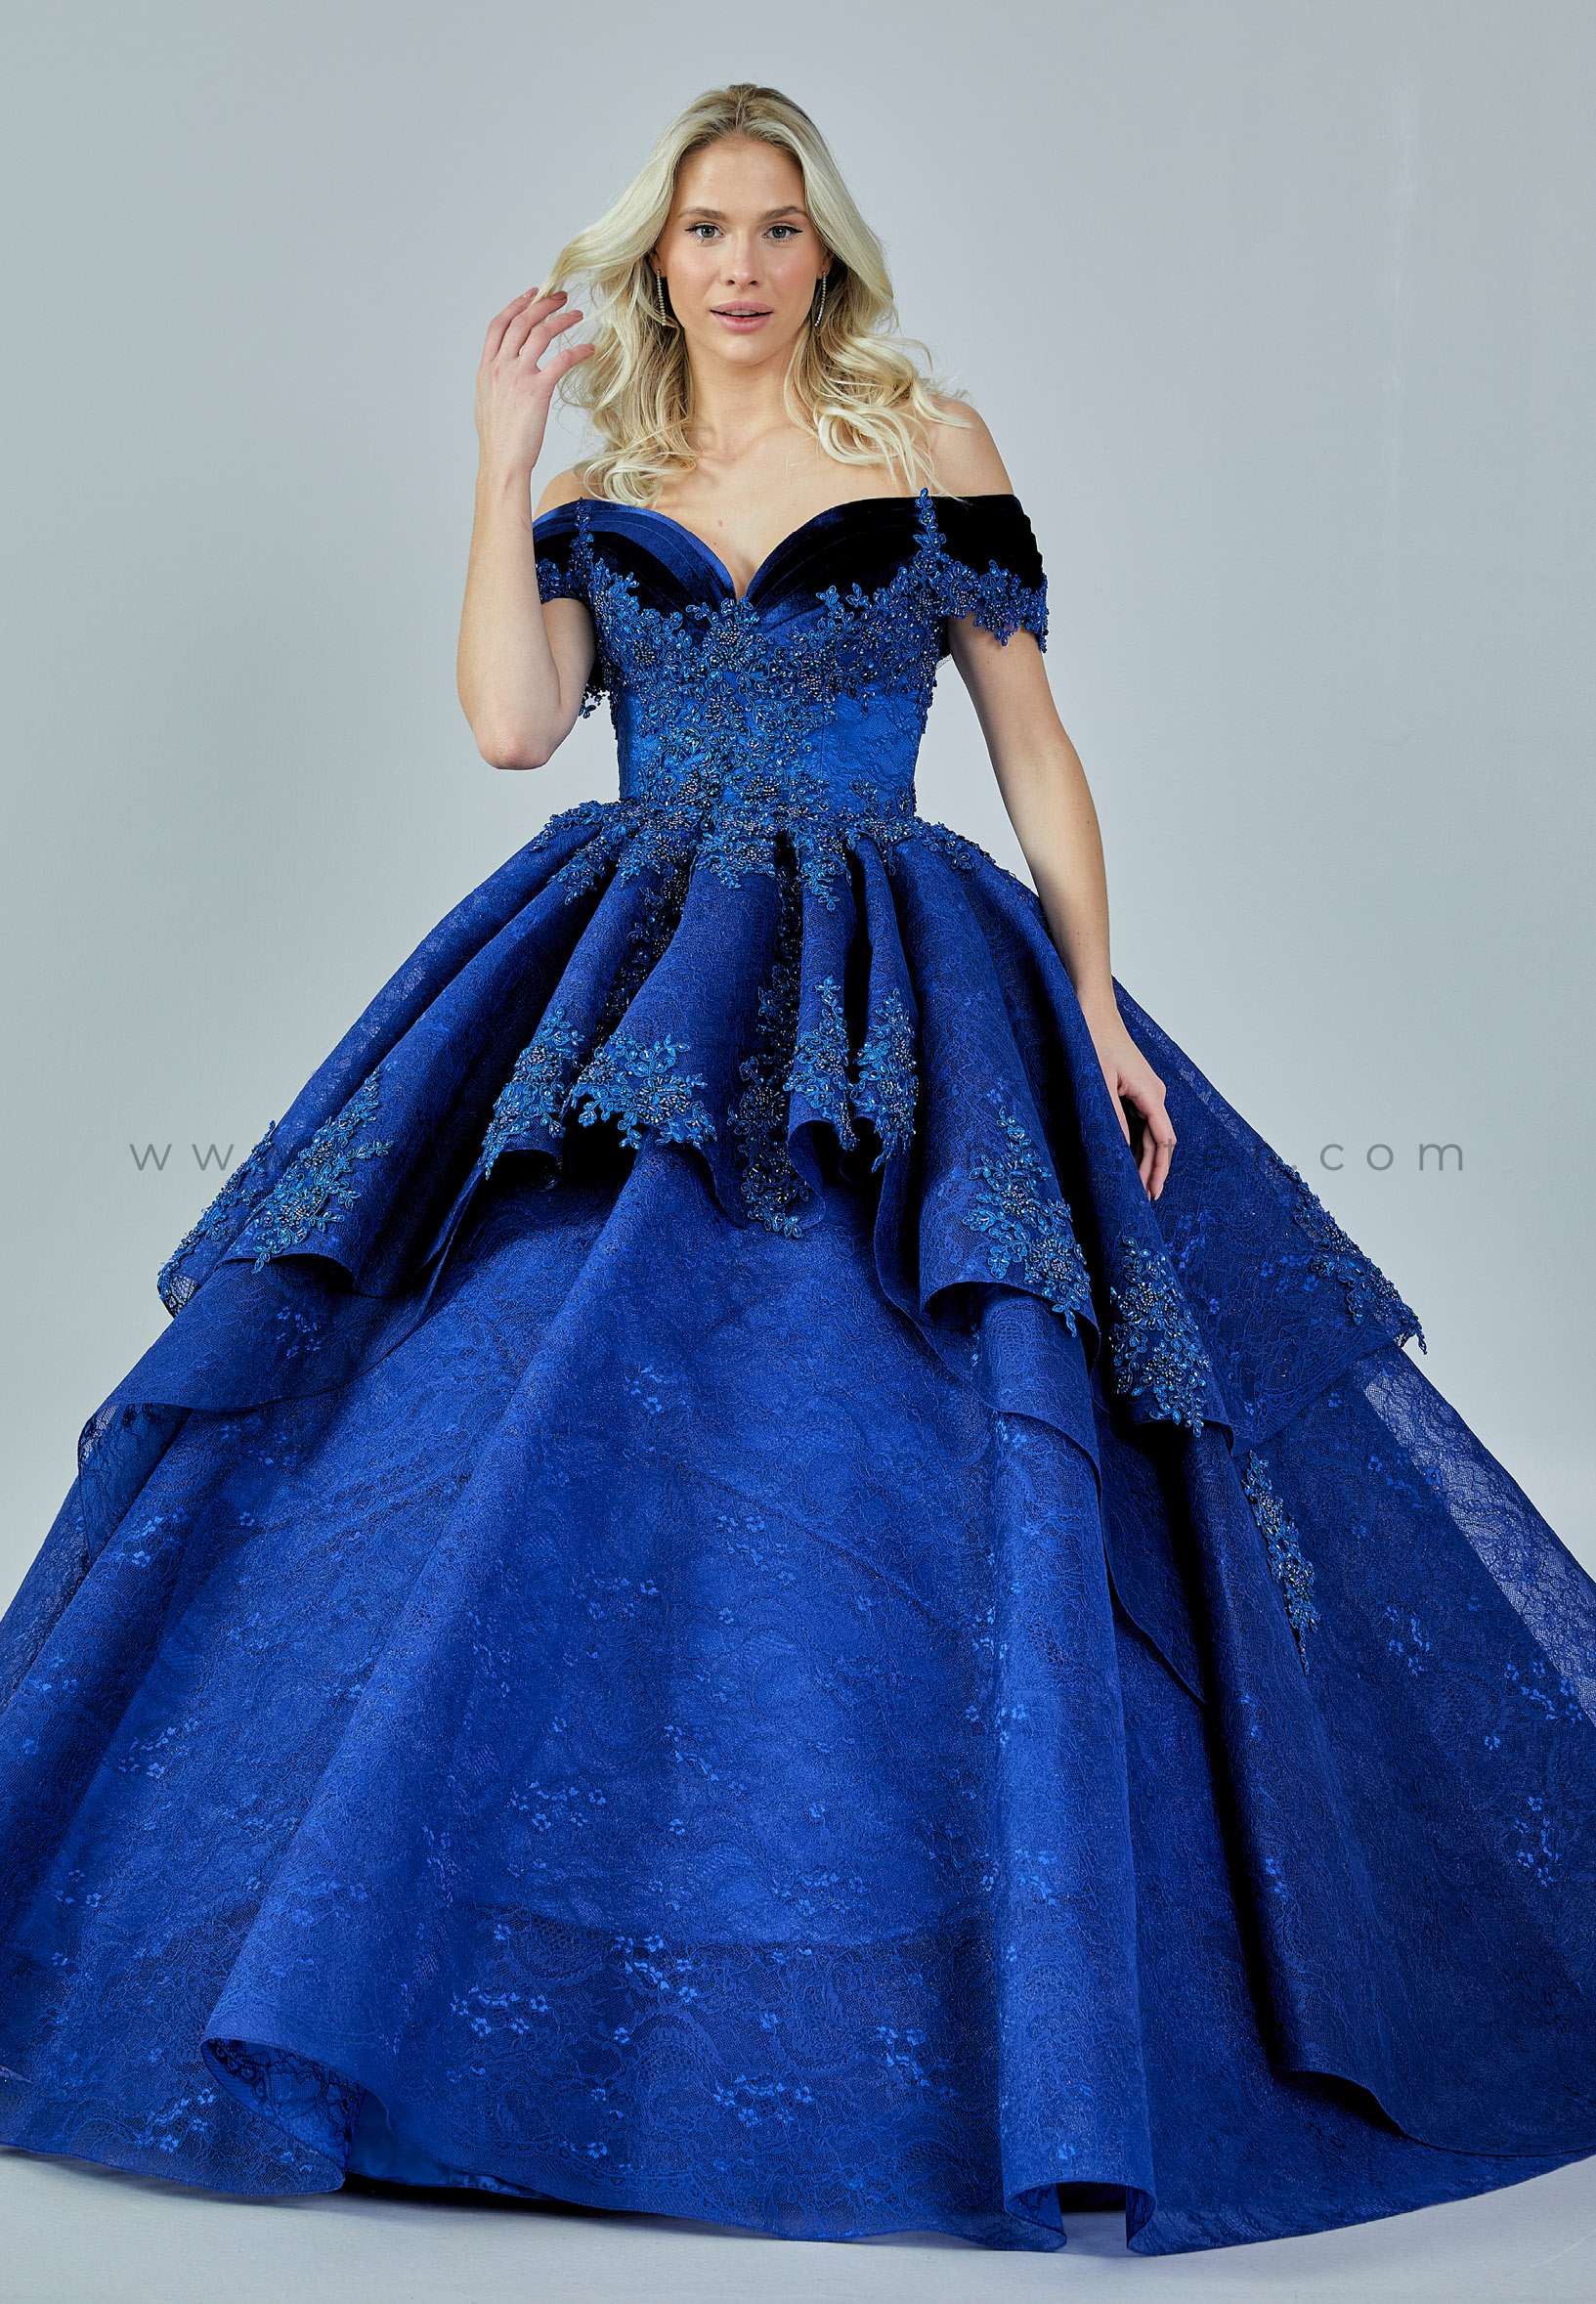 ROYAL BLUE premiun gown s/m | Lazada PH